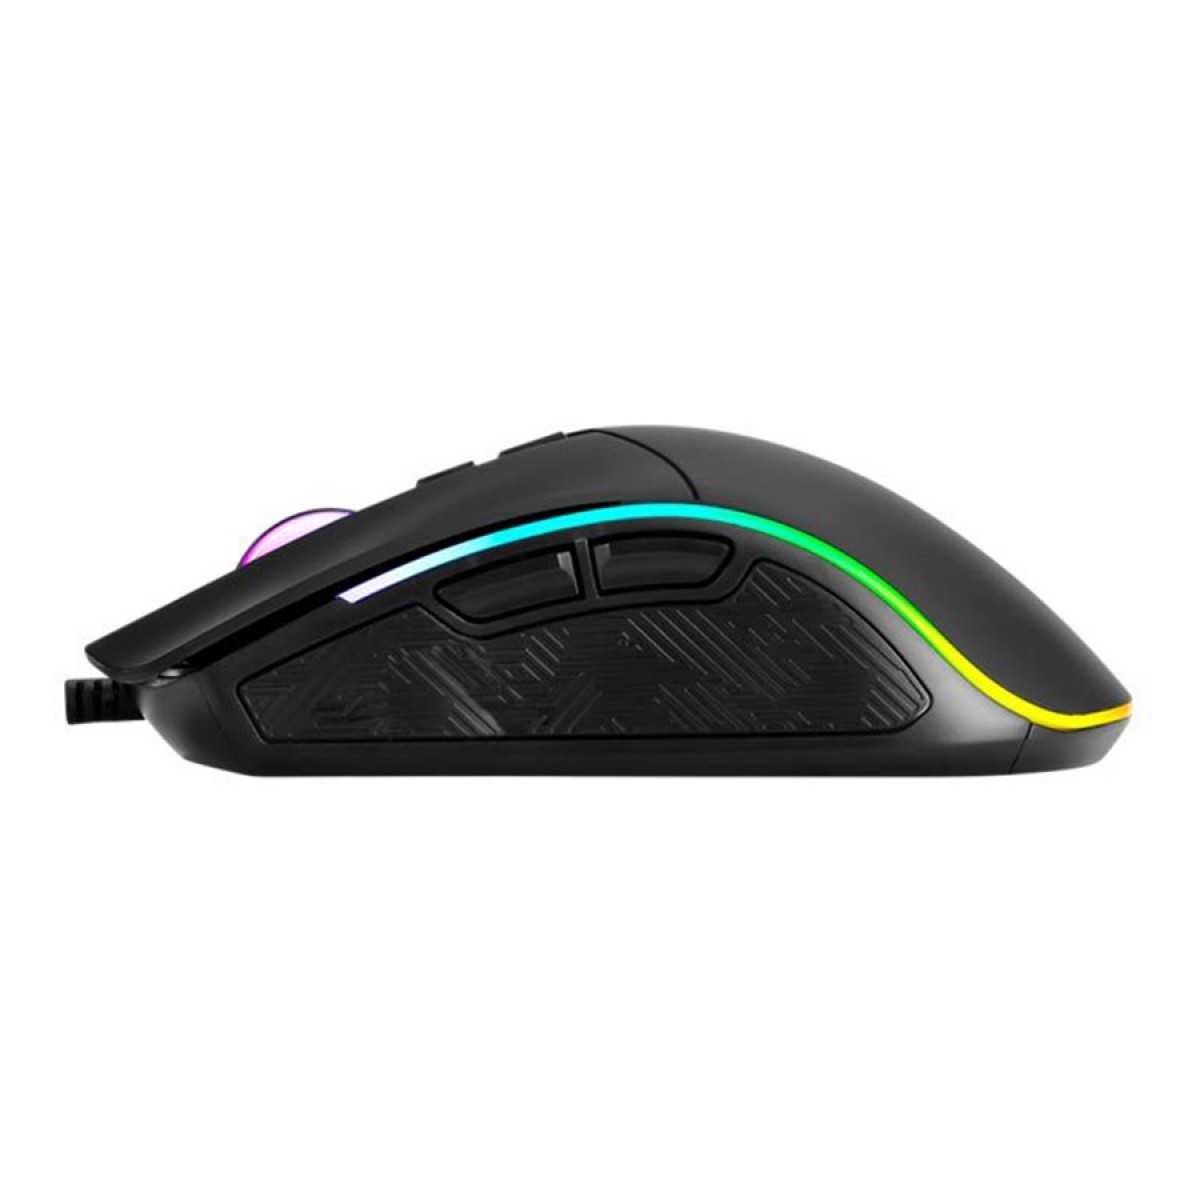 Mouse Gamer Marvo M513, 6400 DPI, 7 Botões, RGB, Black 